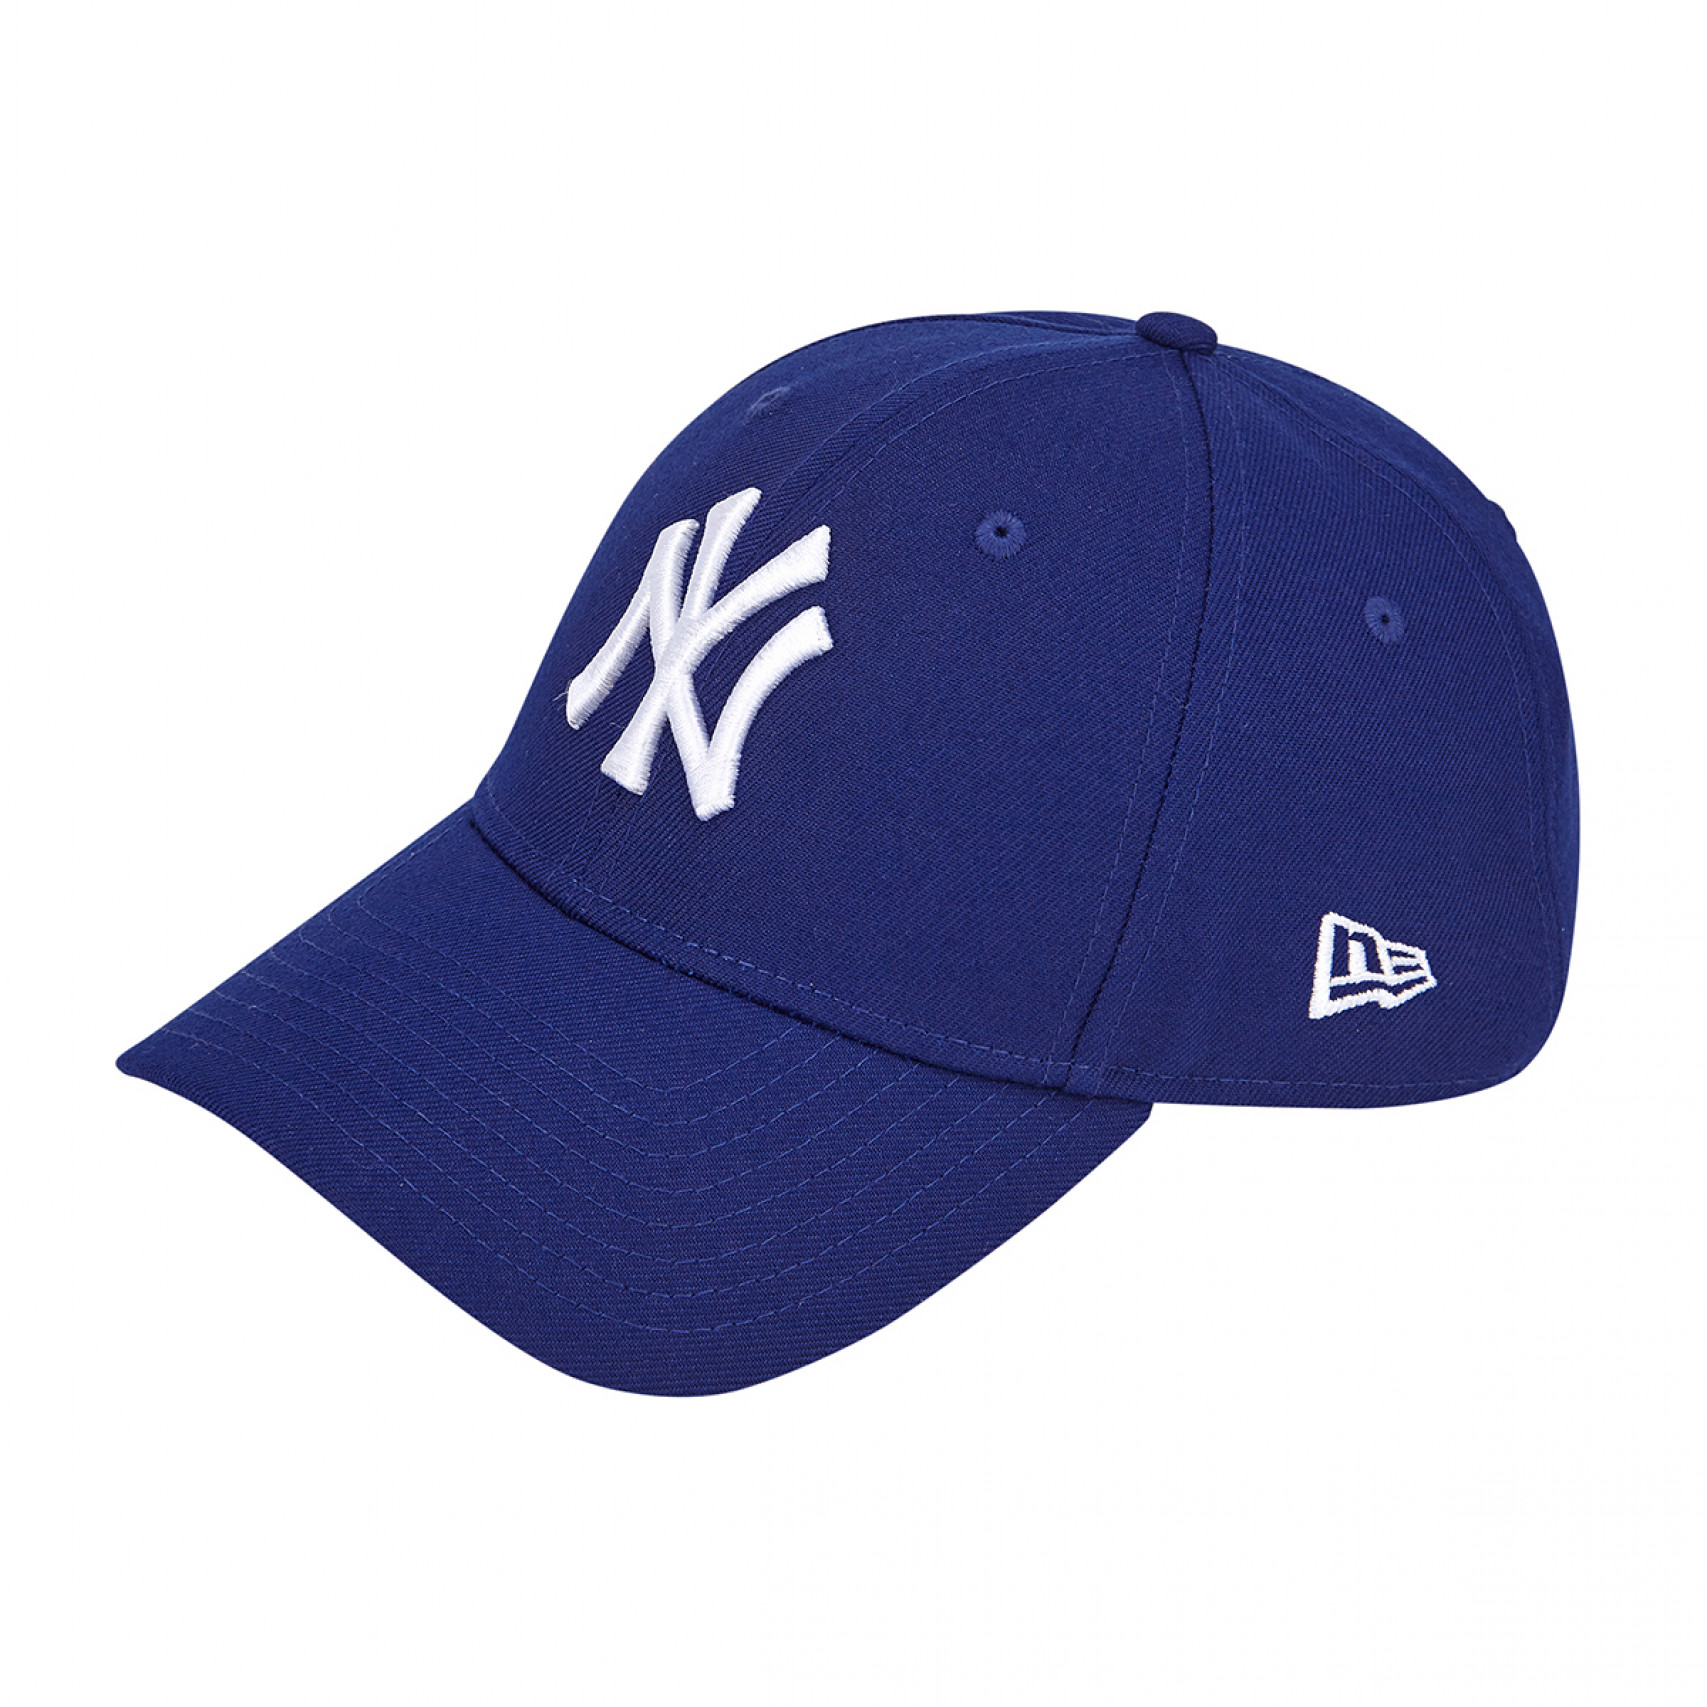 MLB 베이직 뉴욕 양키스 볼캡 다크 로얄 / 14205825